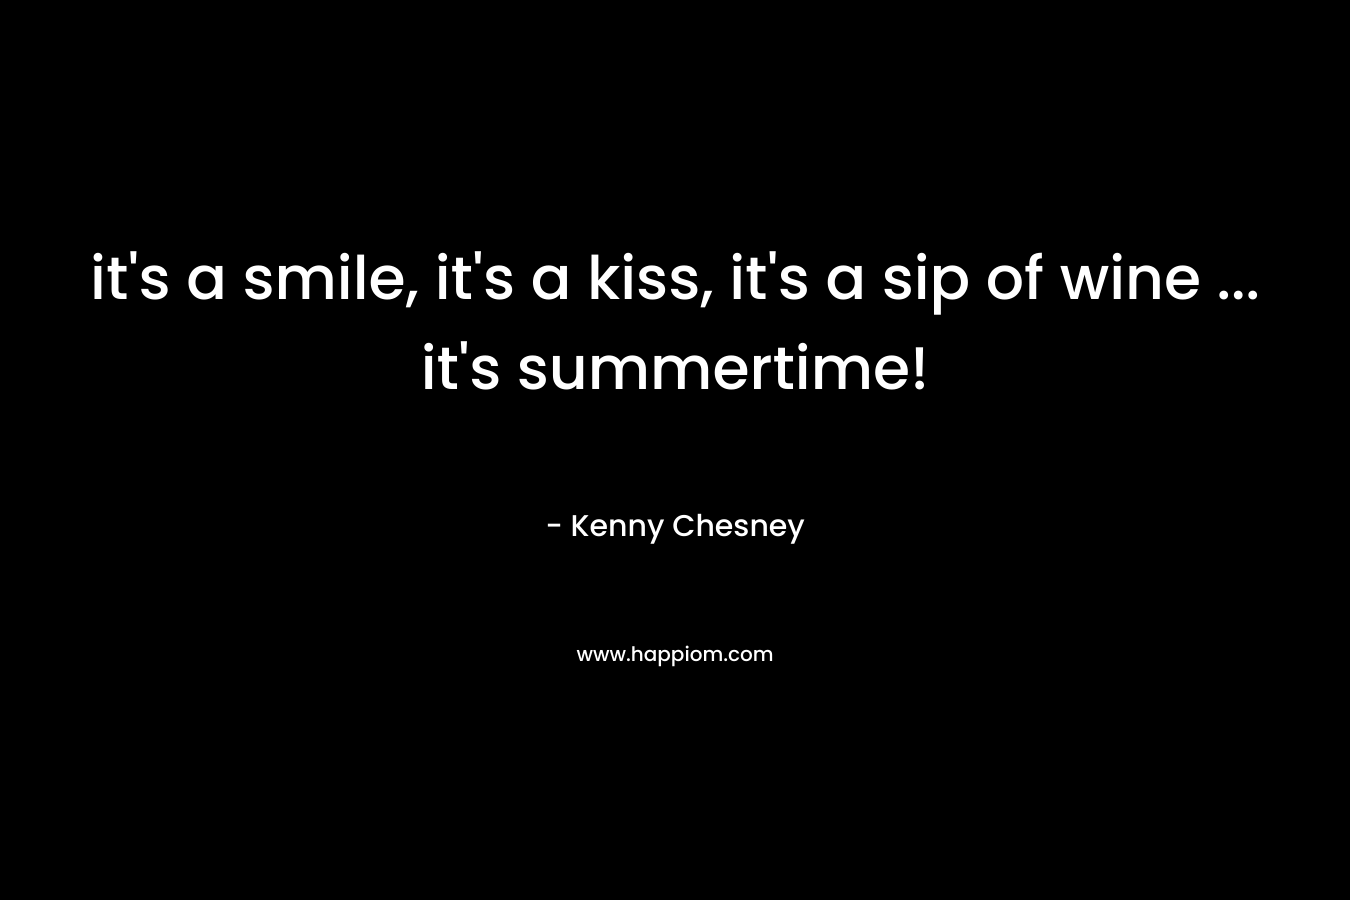 it's a smile, it's a kiss, it's a sip of wine ... it's summertime!